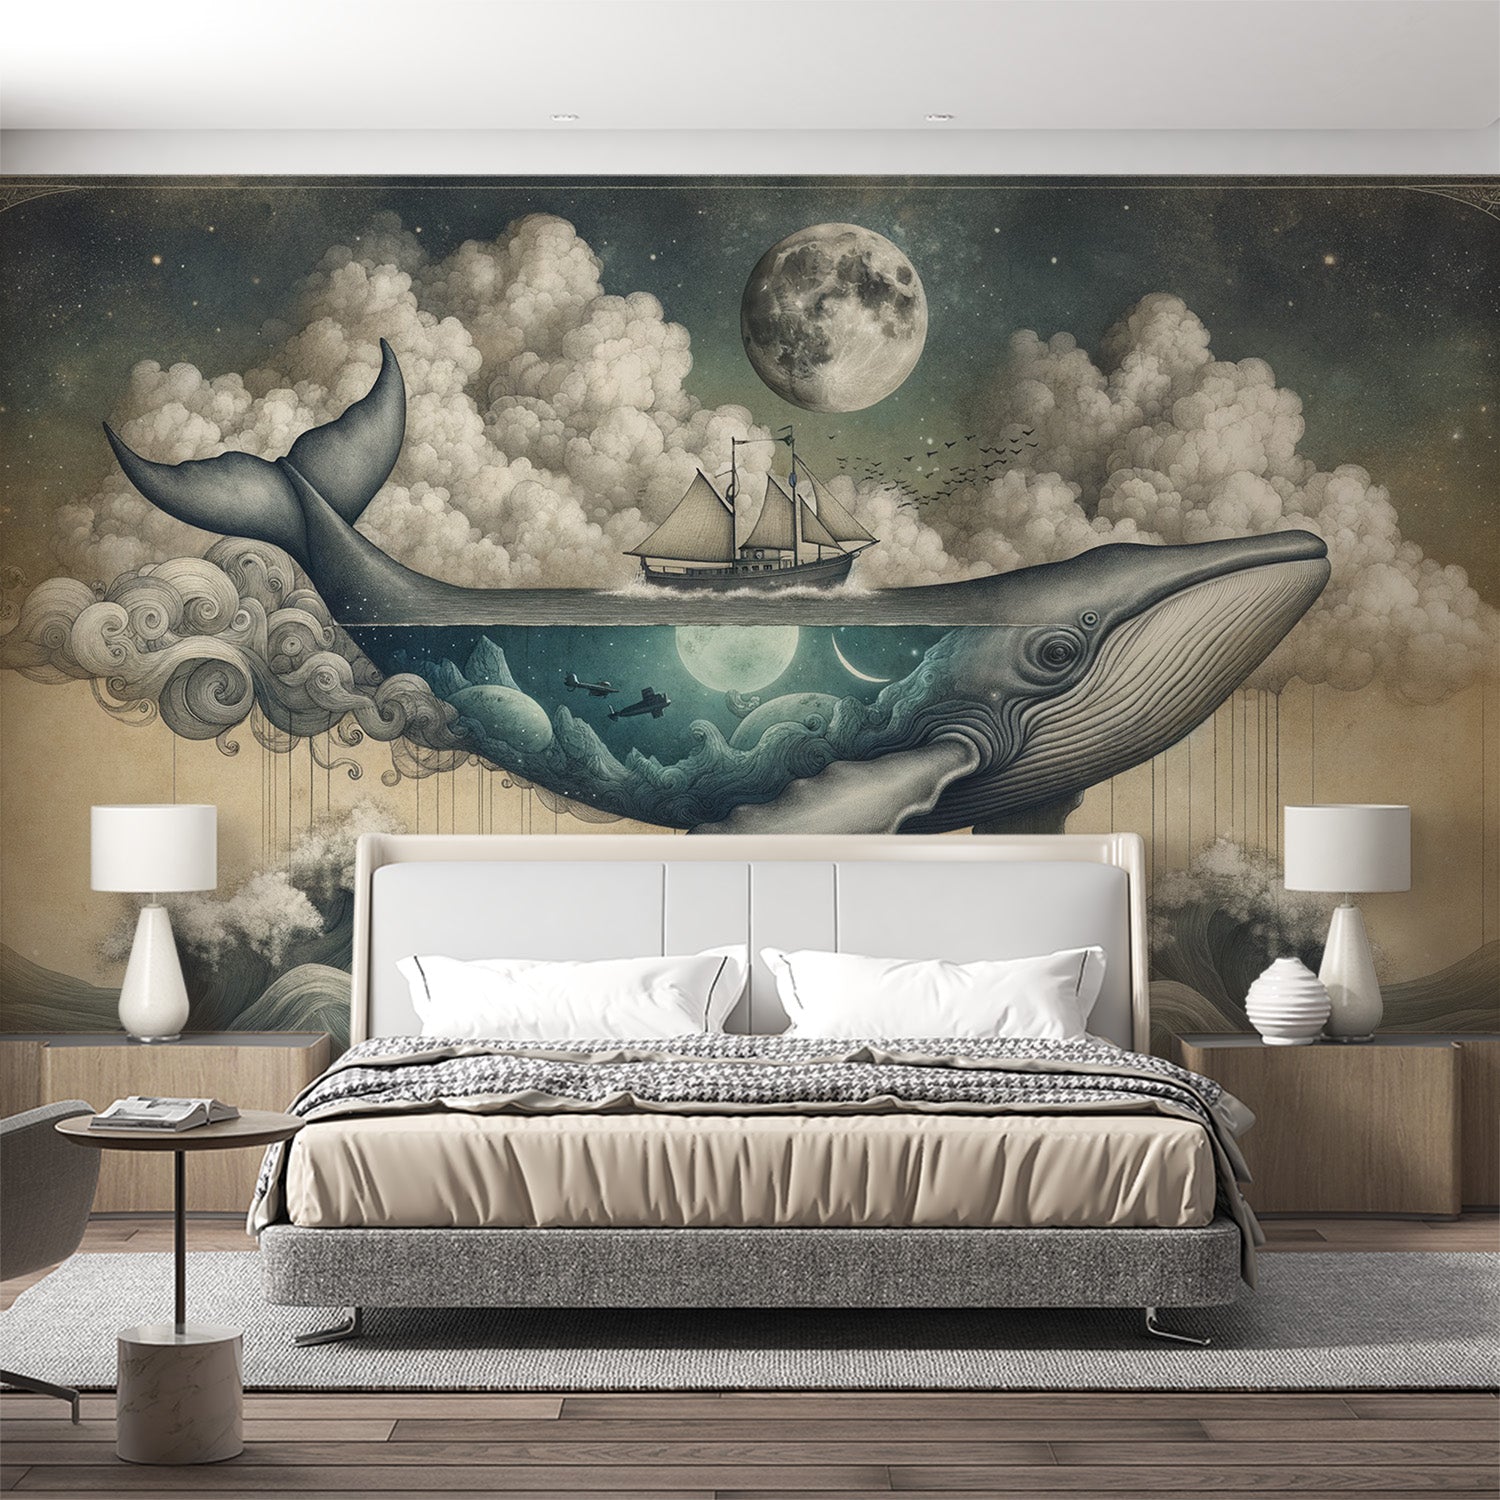  Tapeta wieloryb Latający wieloryb, statek i księżyc na tle nocnym i bawełnianych chmur